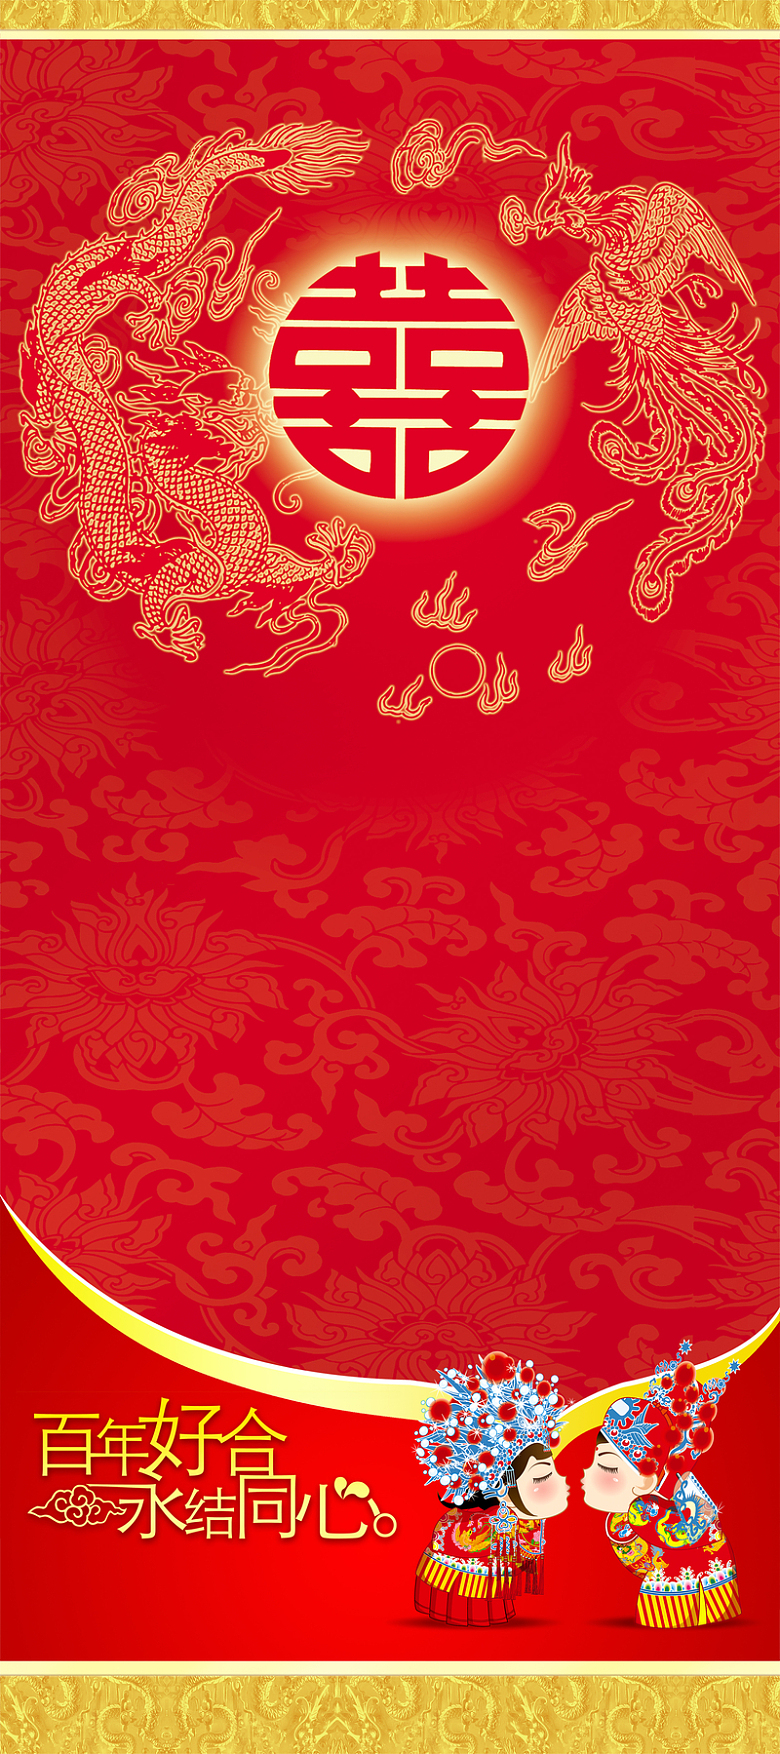 中国传统婚庆风格请柬背景素材